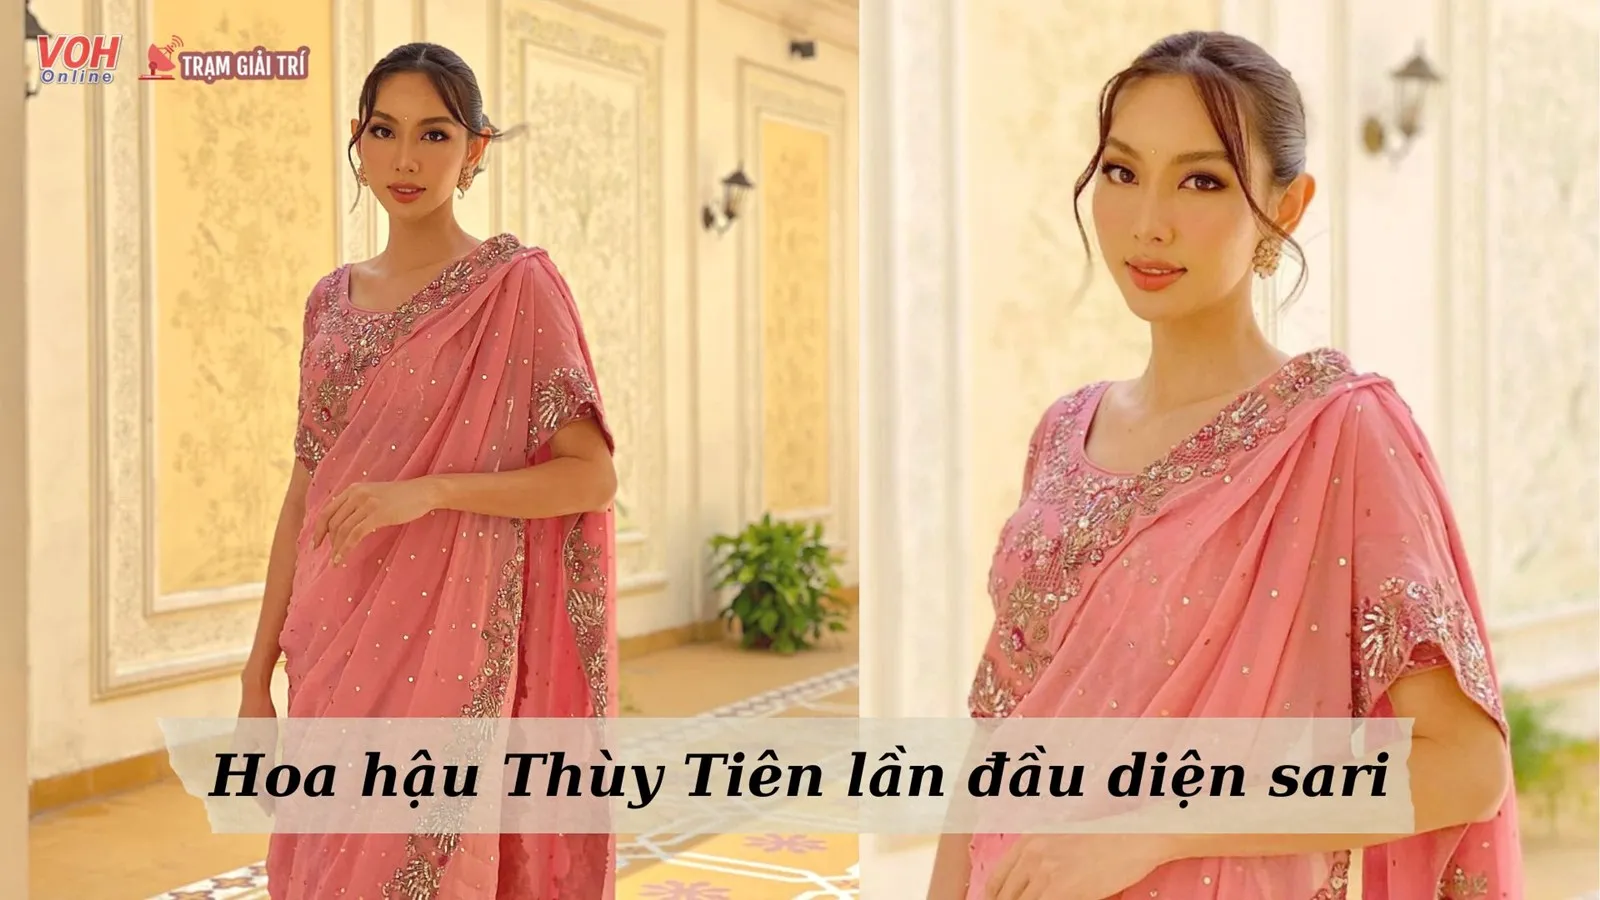 Mê mẩn trước nhan sắc của Thùy Tiên trong bộ trang phục truyền thống Ấn Độ